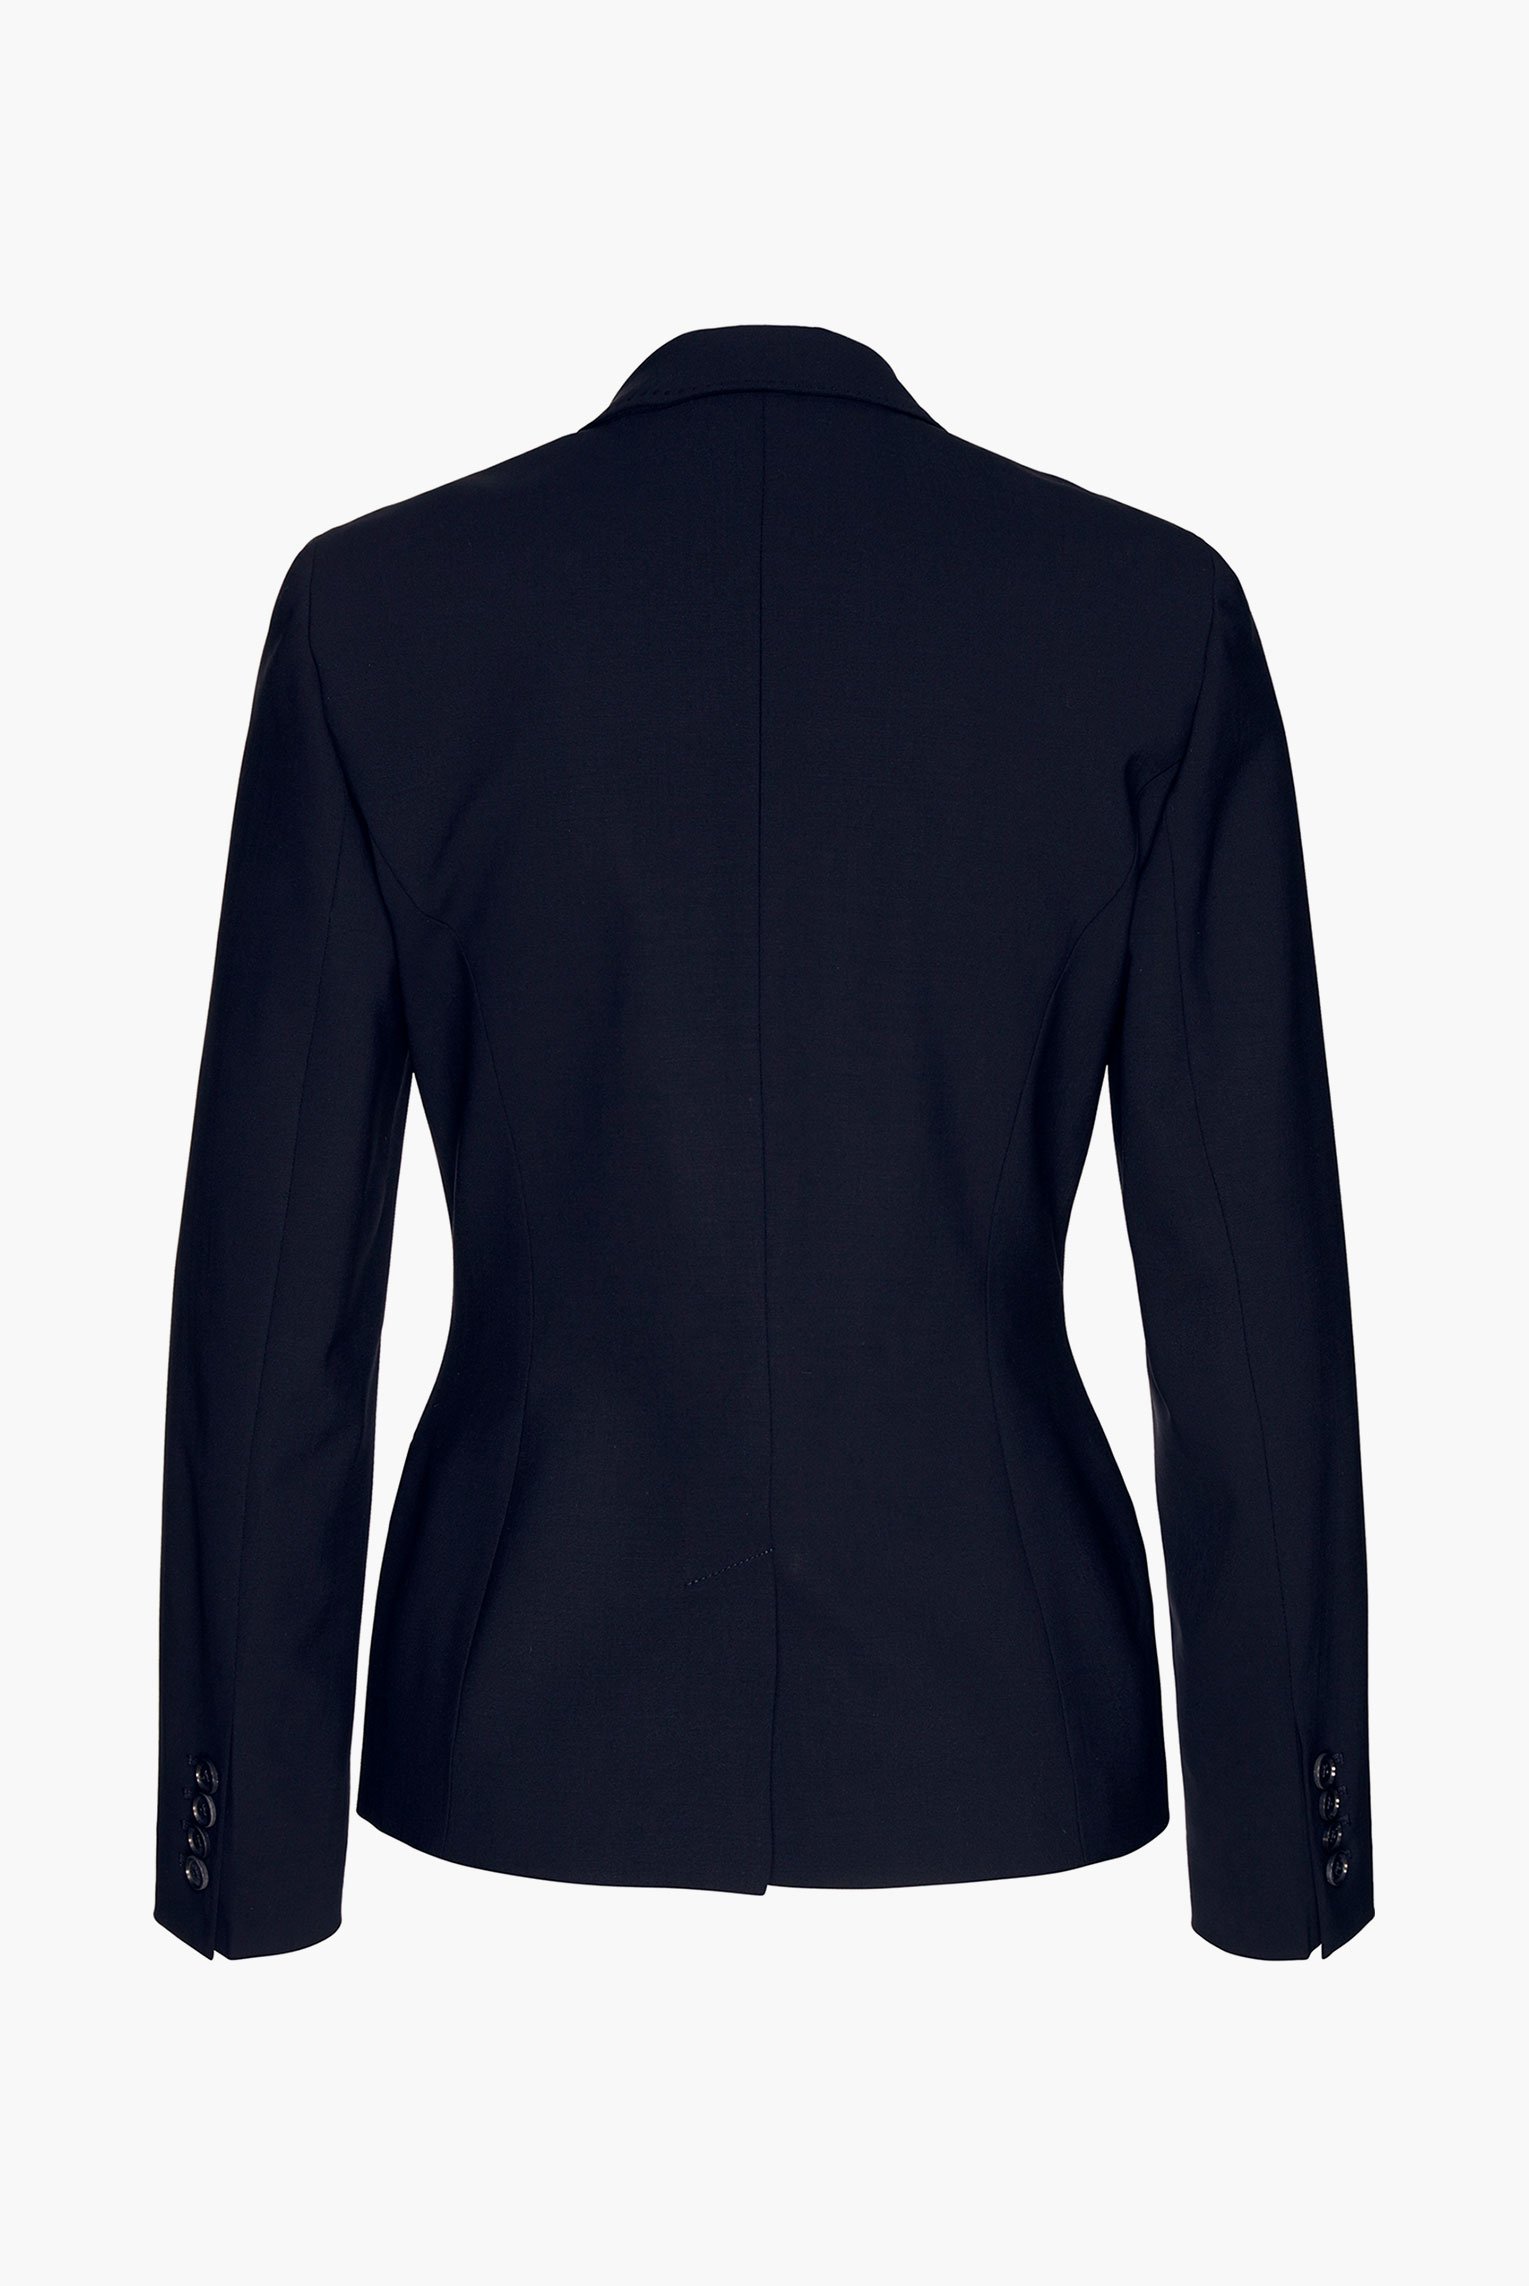 Blazers+Jiny - classic business blazer in wool-stretch+04.6085.07.H00528.790.44